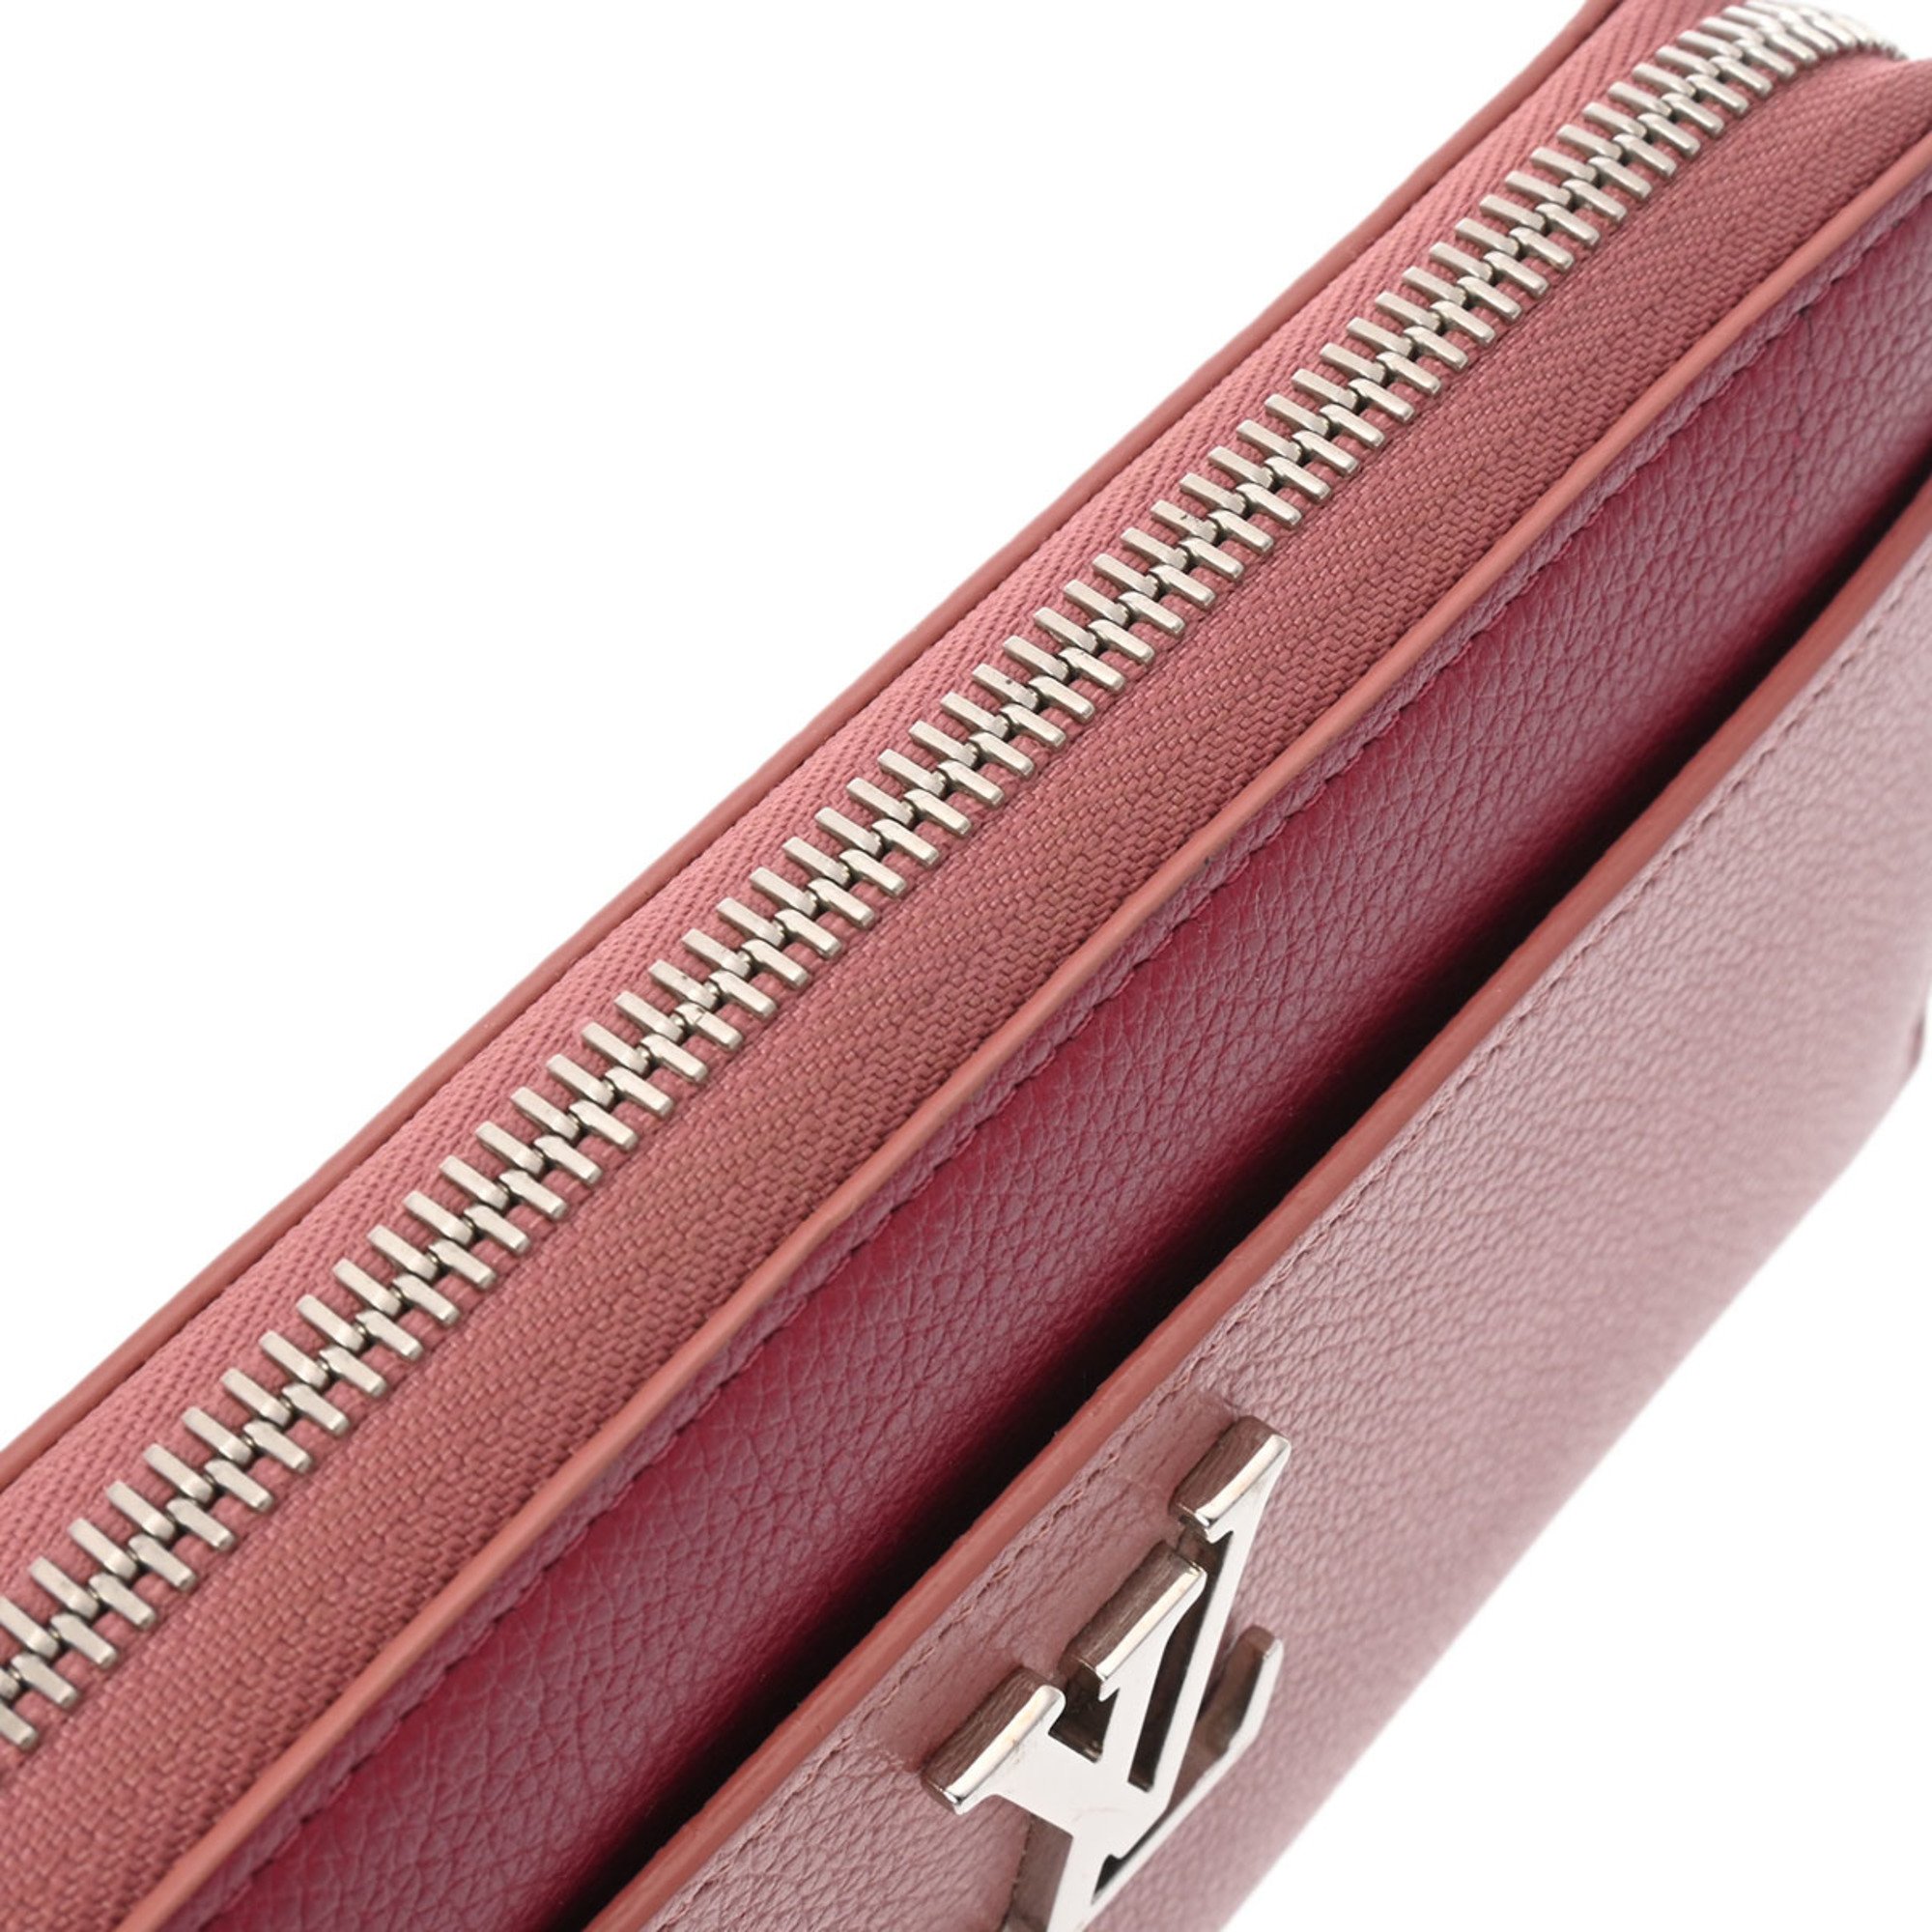 LOUIS VUITTON Louis Vuitton Zippy Lock Me Rose Poudre/Rideau Van M62949 Women's Leather Long Wallet